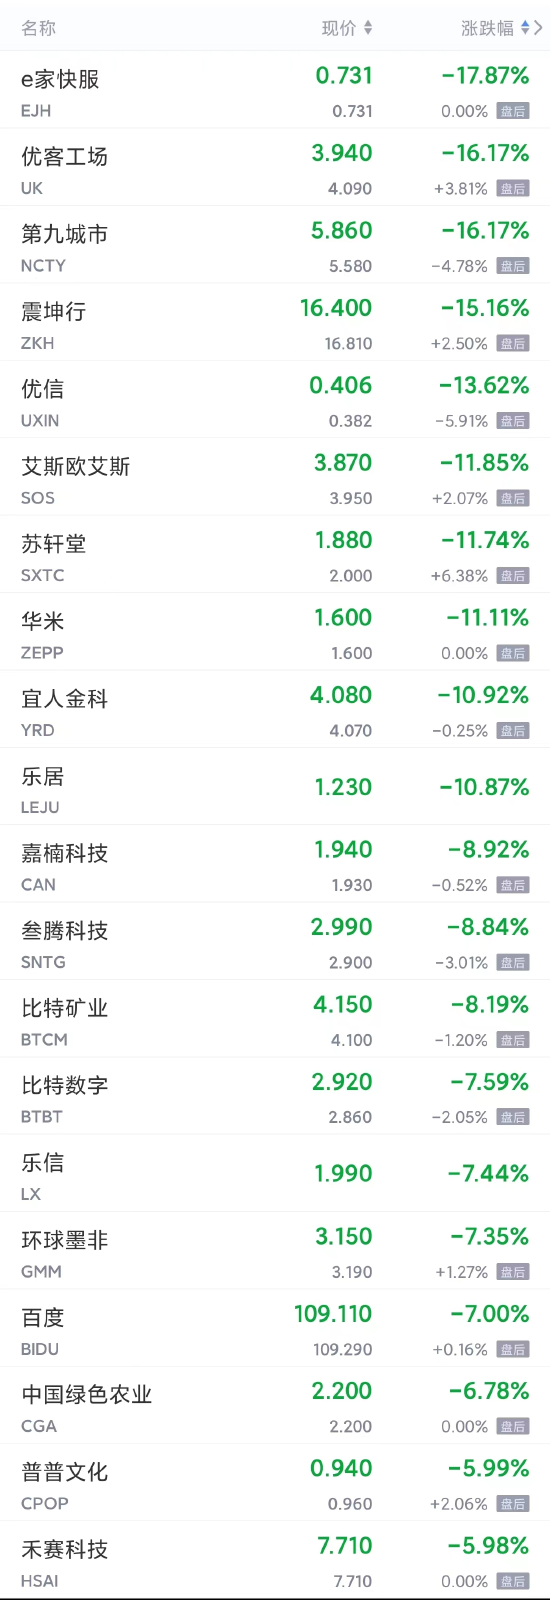 周五热门中概股多数下跌 百度跌超7%，理想、小鹏跌超4%，蔚来跌超3%，京东跌超2%